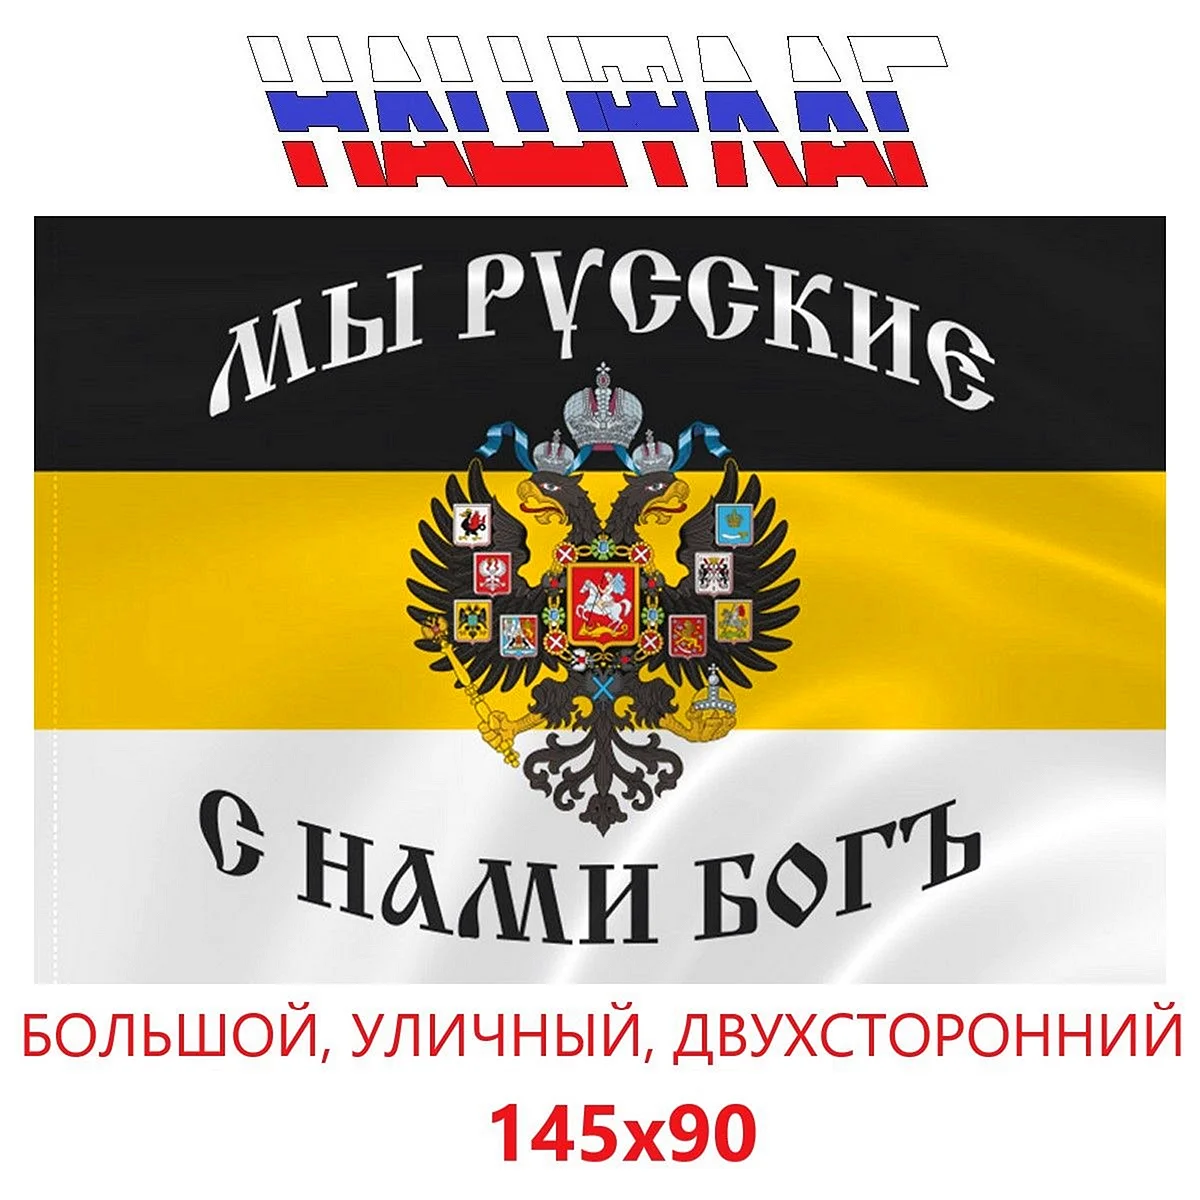 Имперский флаг Российской империи с нами Бог